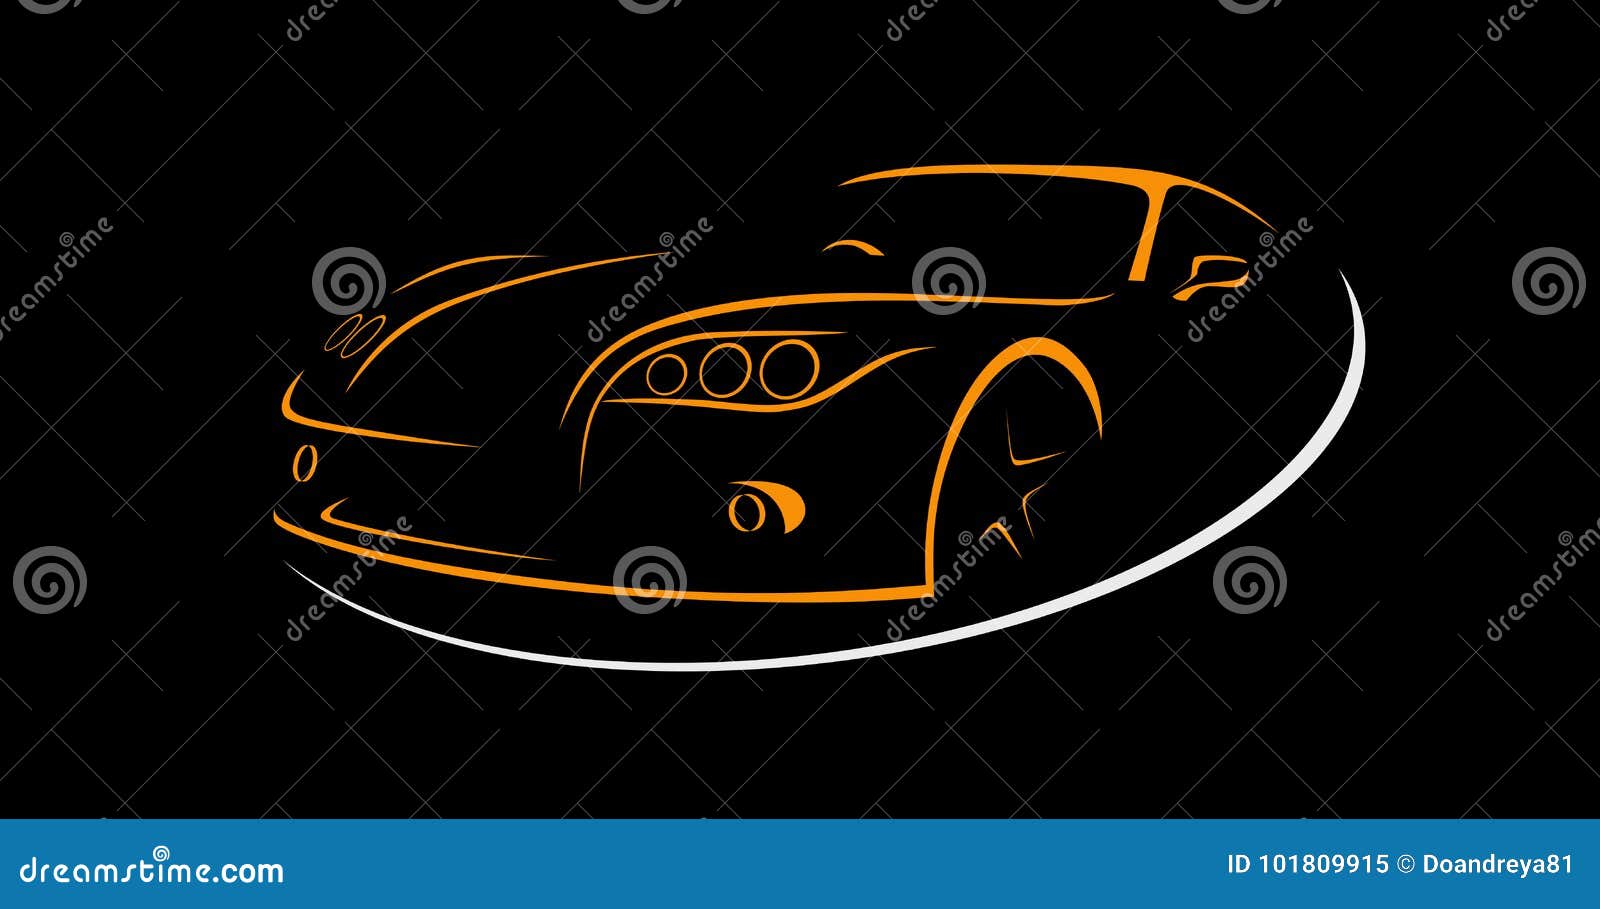 Конспект ренты автомобиля выравнивает вектор логос также вектор иллюстрации притяжки corel